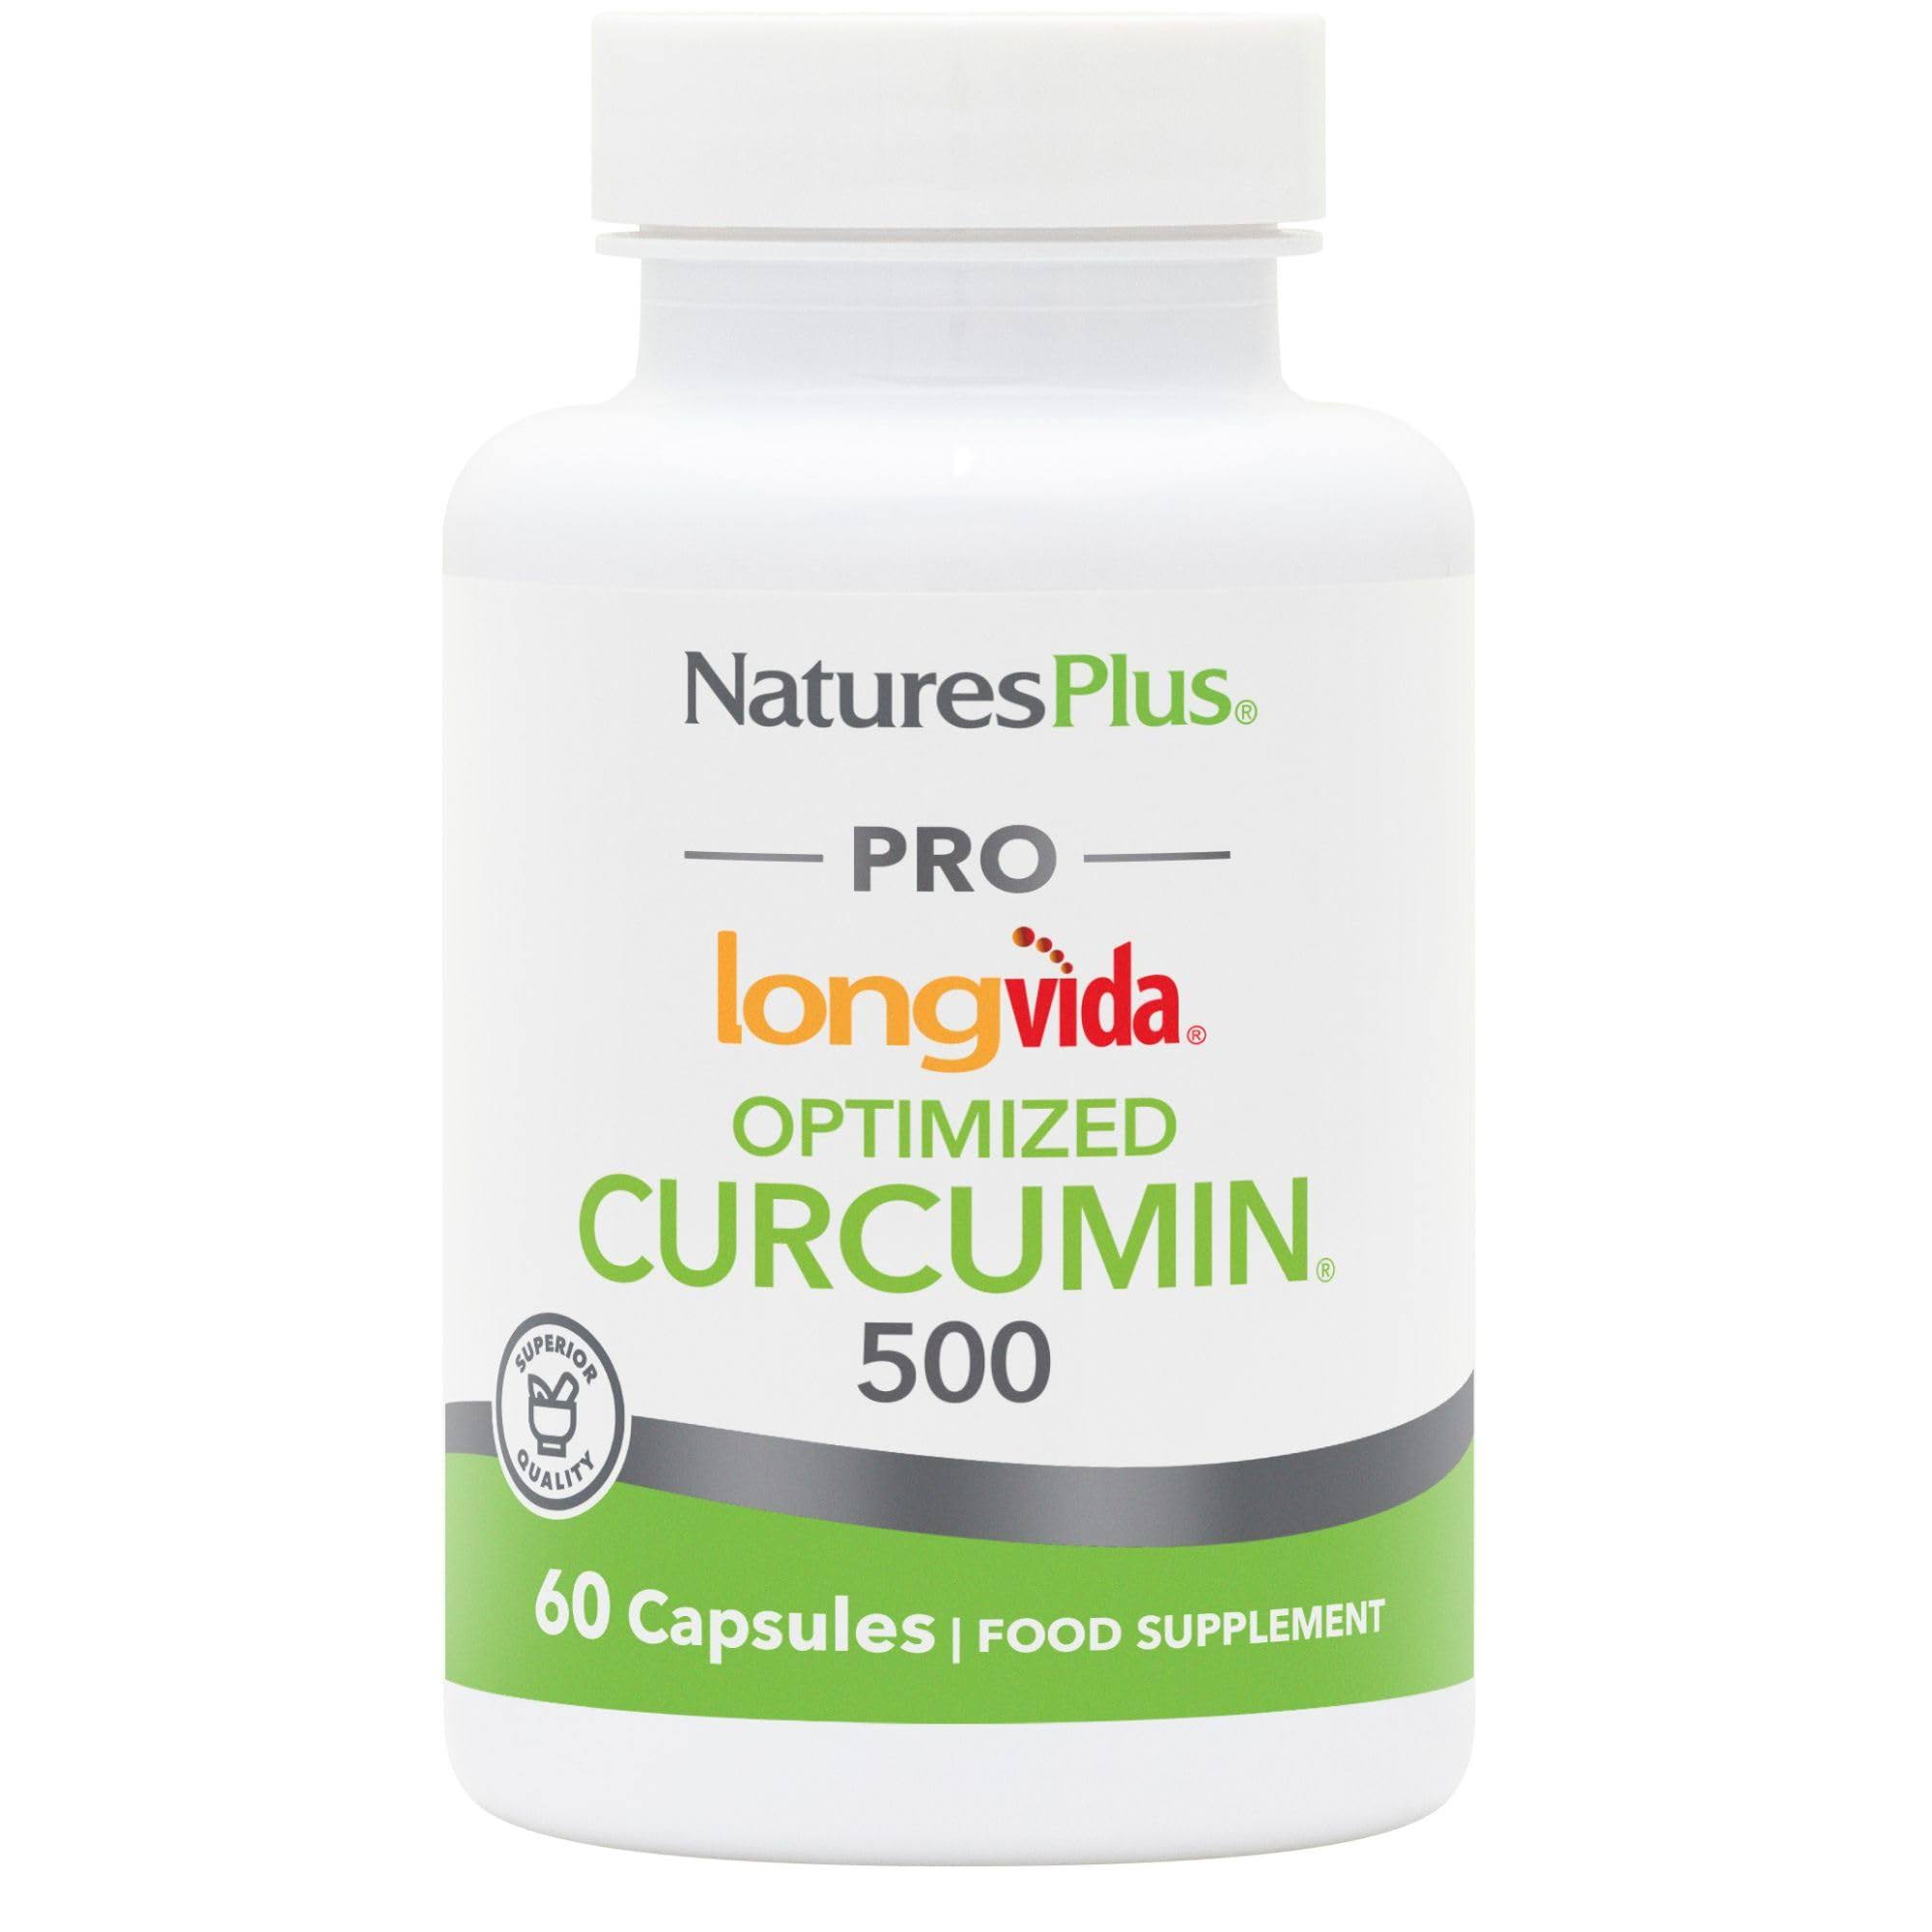 Nature's Plus PRO Curcumin Longvida 500mg Capsules 60